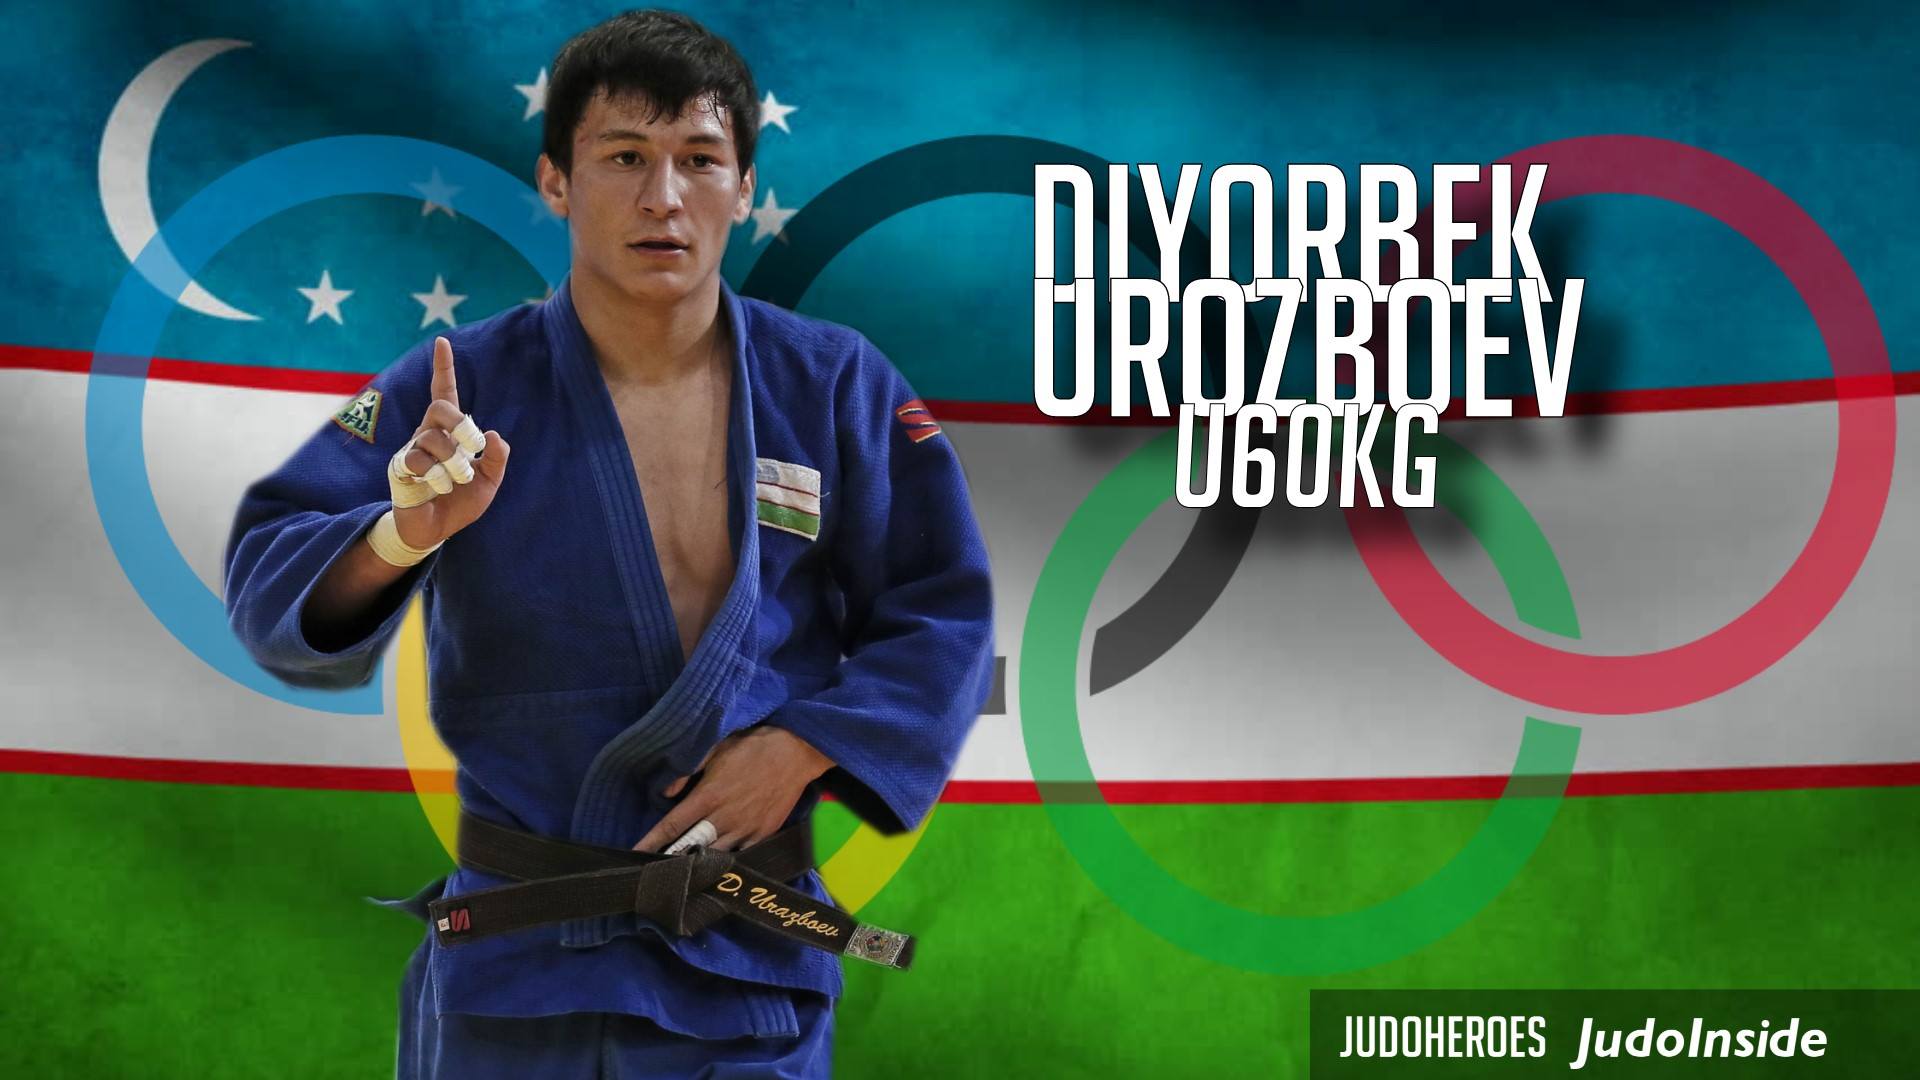 Diyorbek Urozboev, Judoka, JudoInside